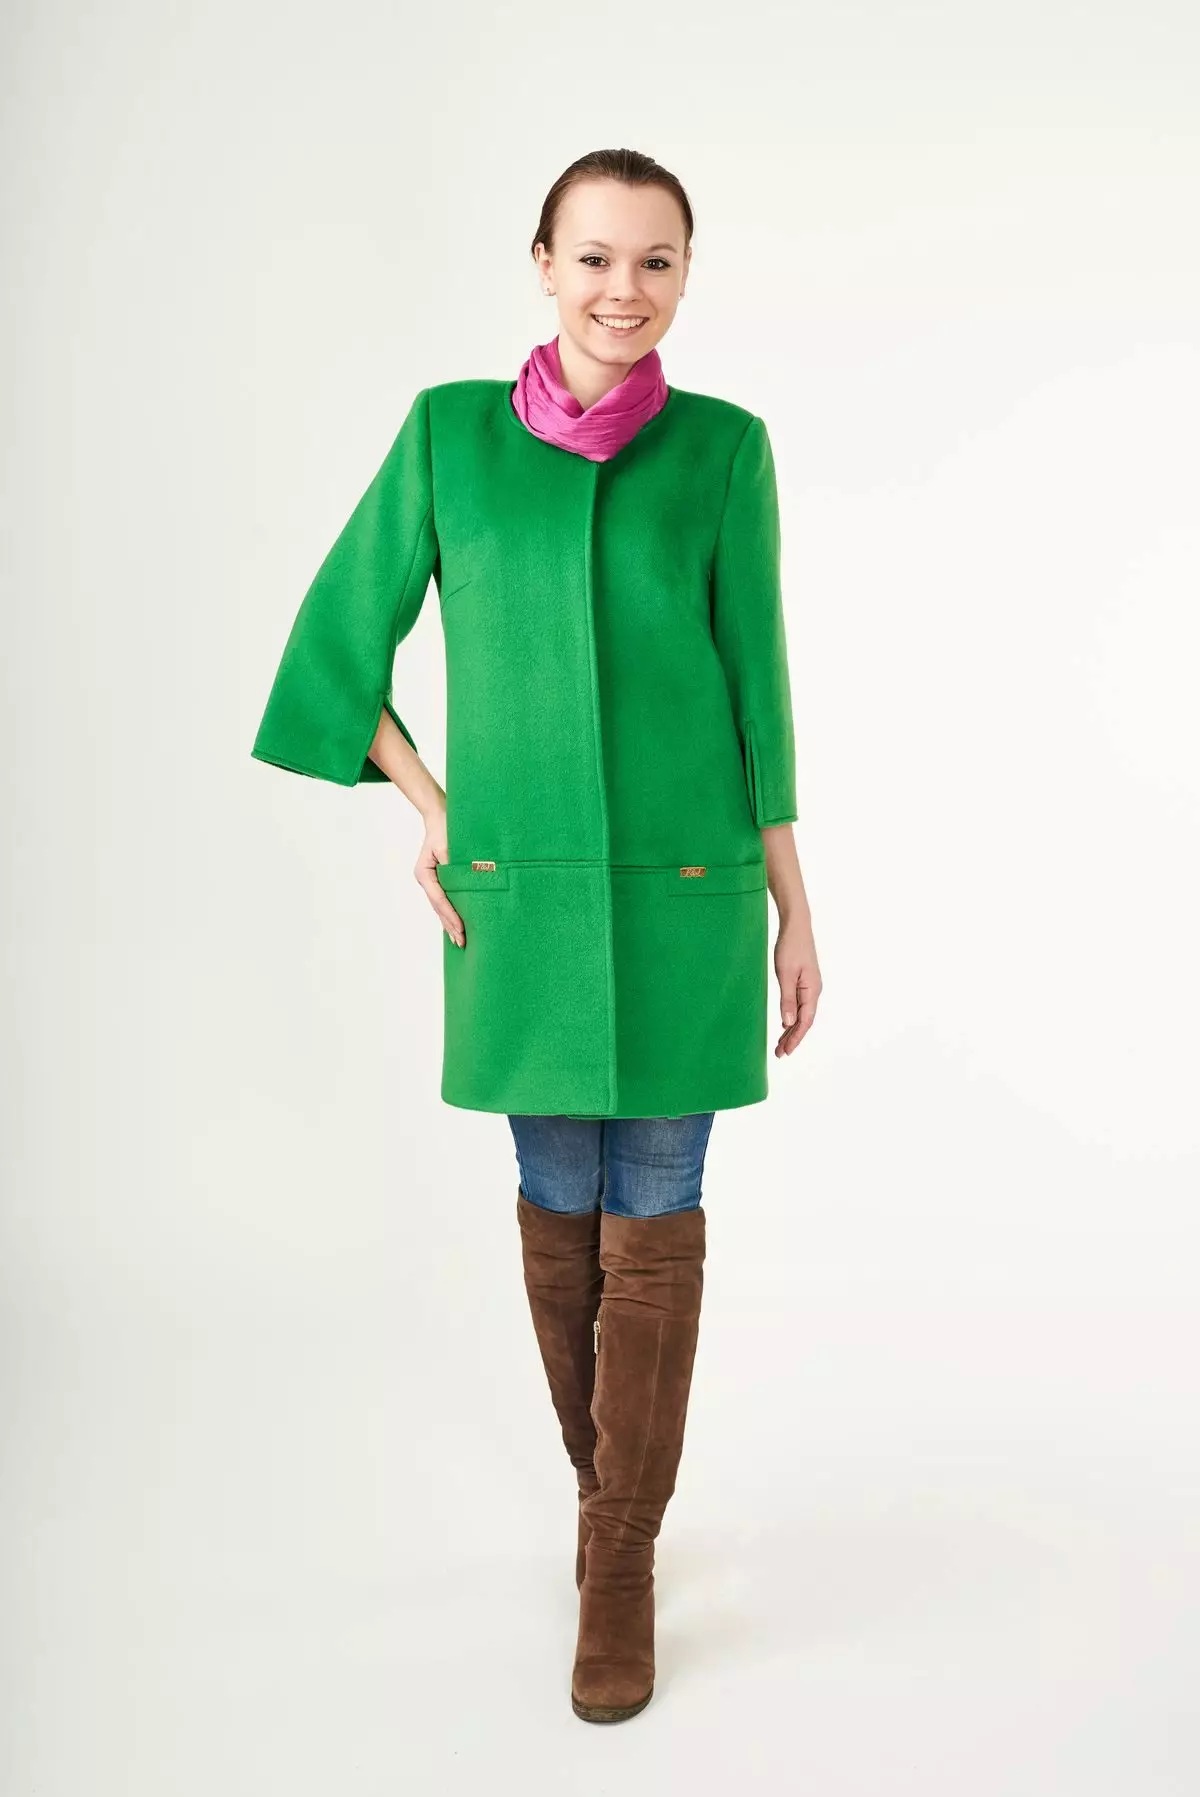 녹색 코트 (122 장의 사진)를 착용하는 것 : 진한 녹색, 어떤 스카프가 적합 할 것, 가방, 부속품, 영어 칼라가있는 코트 601_117